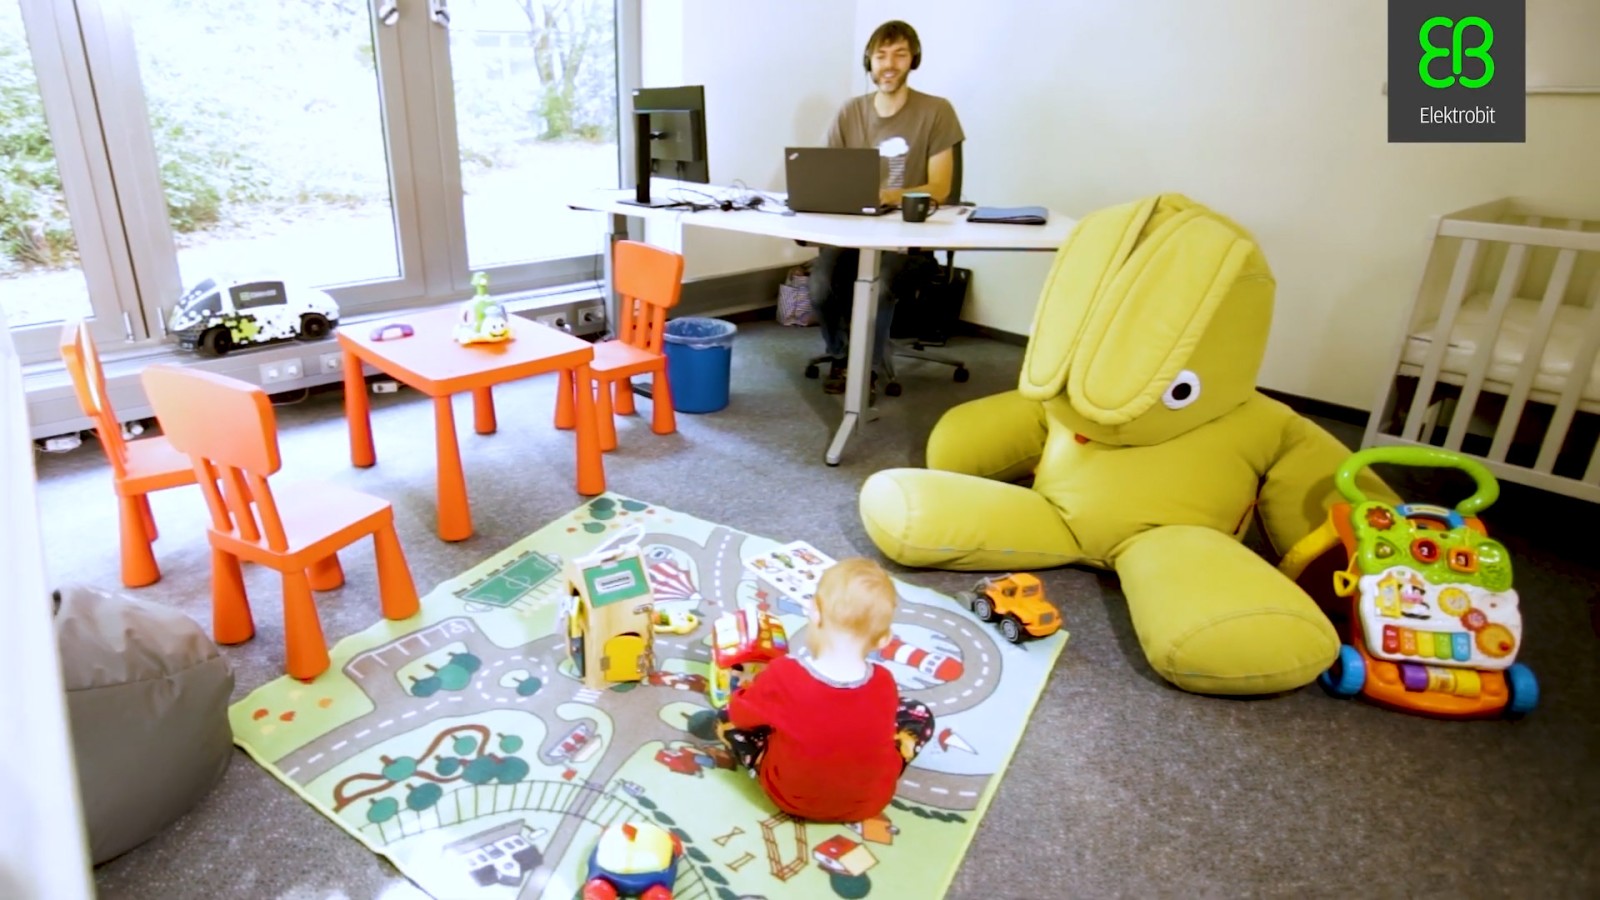 Ein Vater arbeitet in einem der hauseigenen Parent-Child-Offices, während sein Kind neben dem Schreibtisch spielt